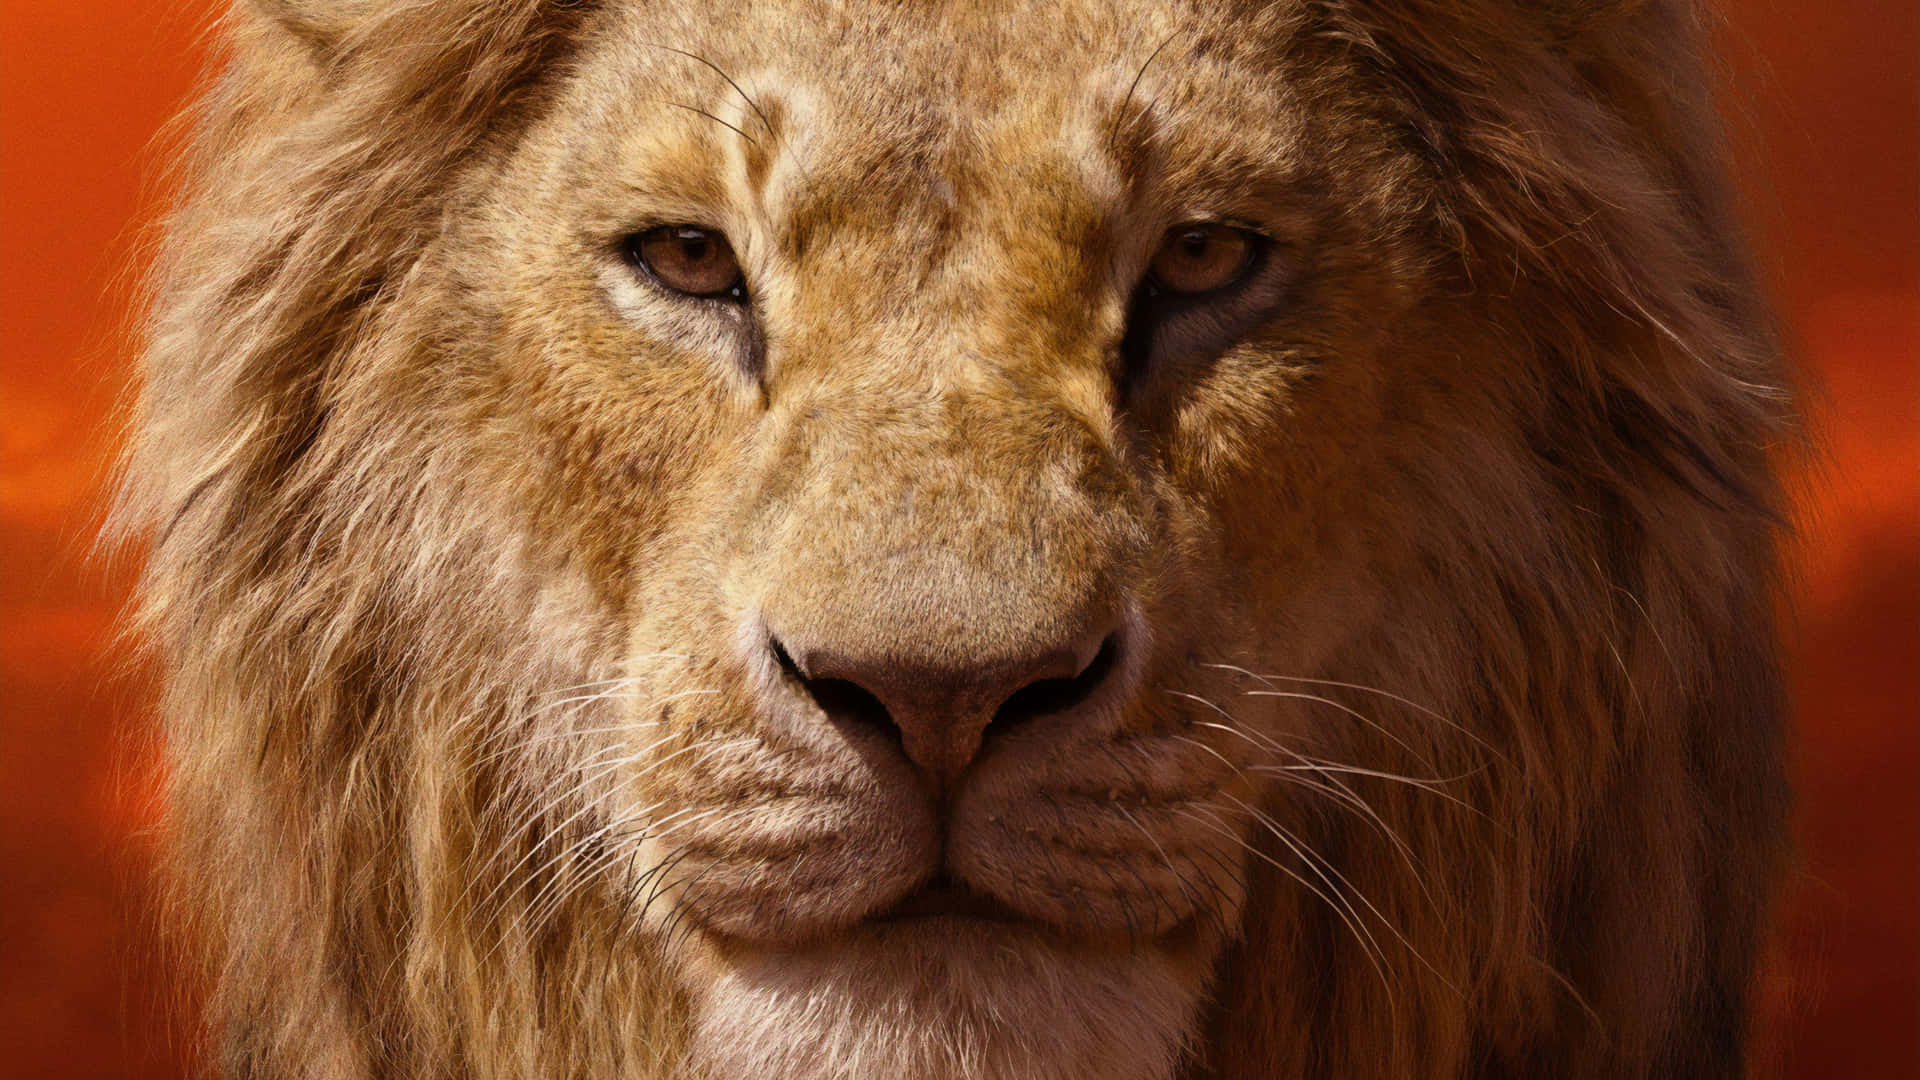 Majestic Lion Portrait Background